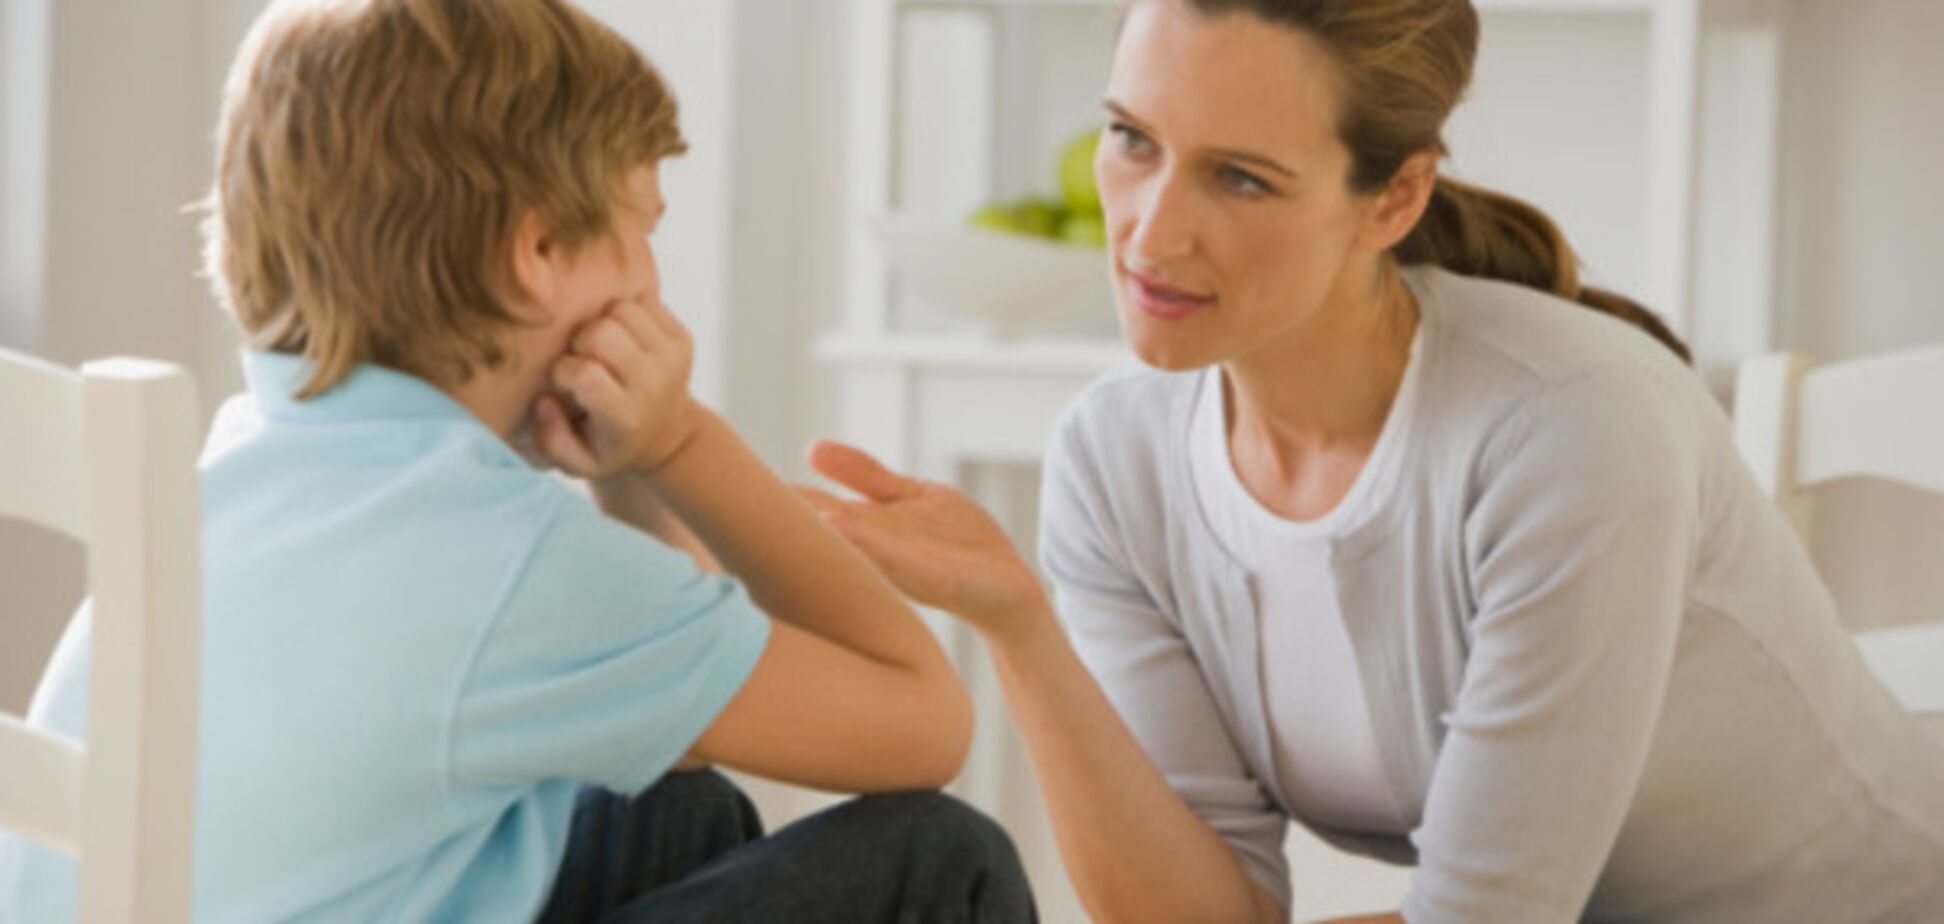 Микс гнева и отчаяния: психолог рассказала, что чувствуют родители, когда бьют ребенка